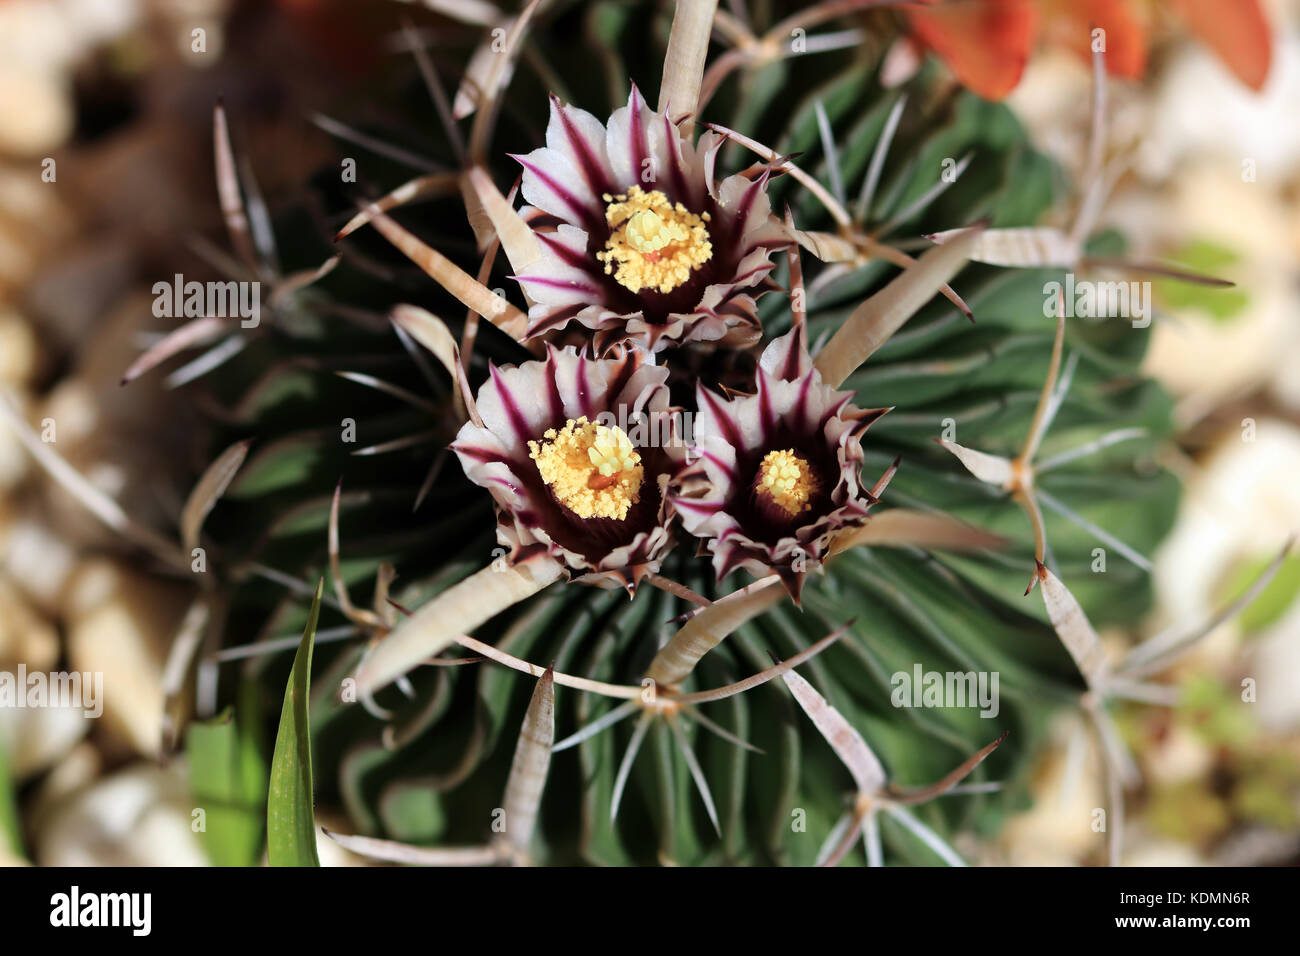 Echinofossulocactus Cactus Stock Photo